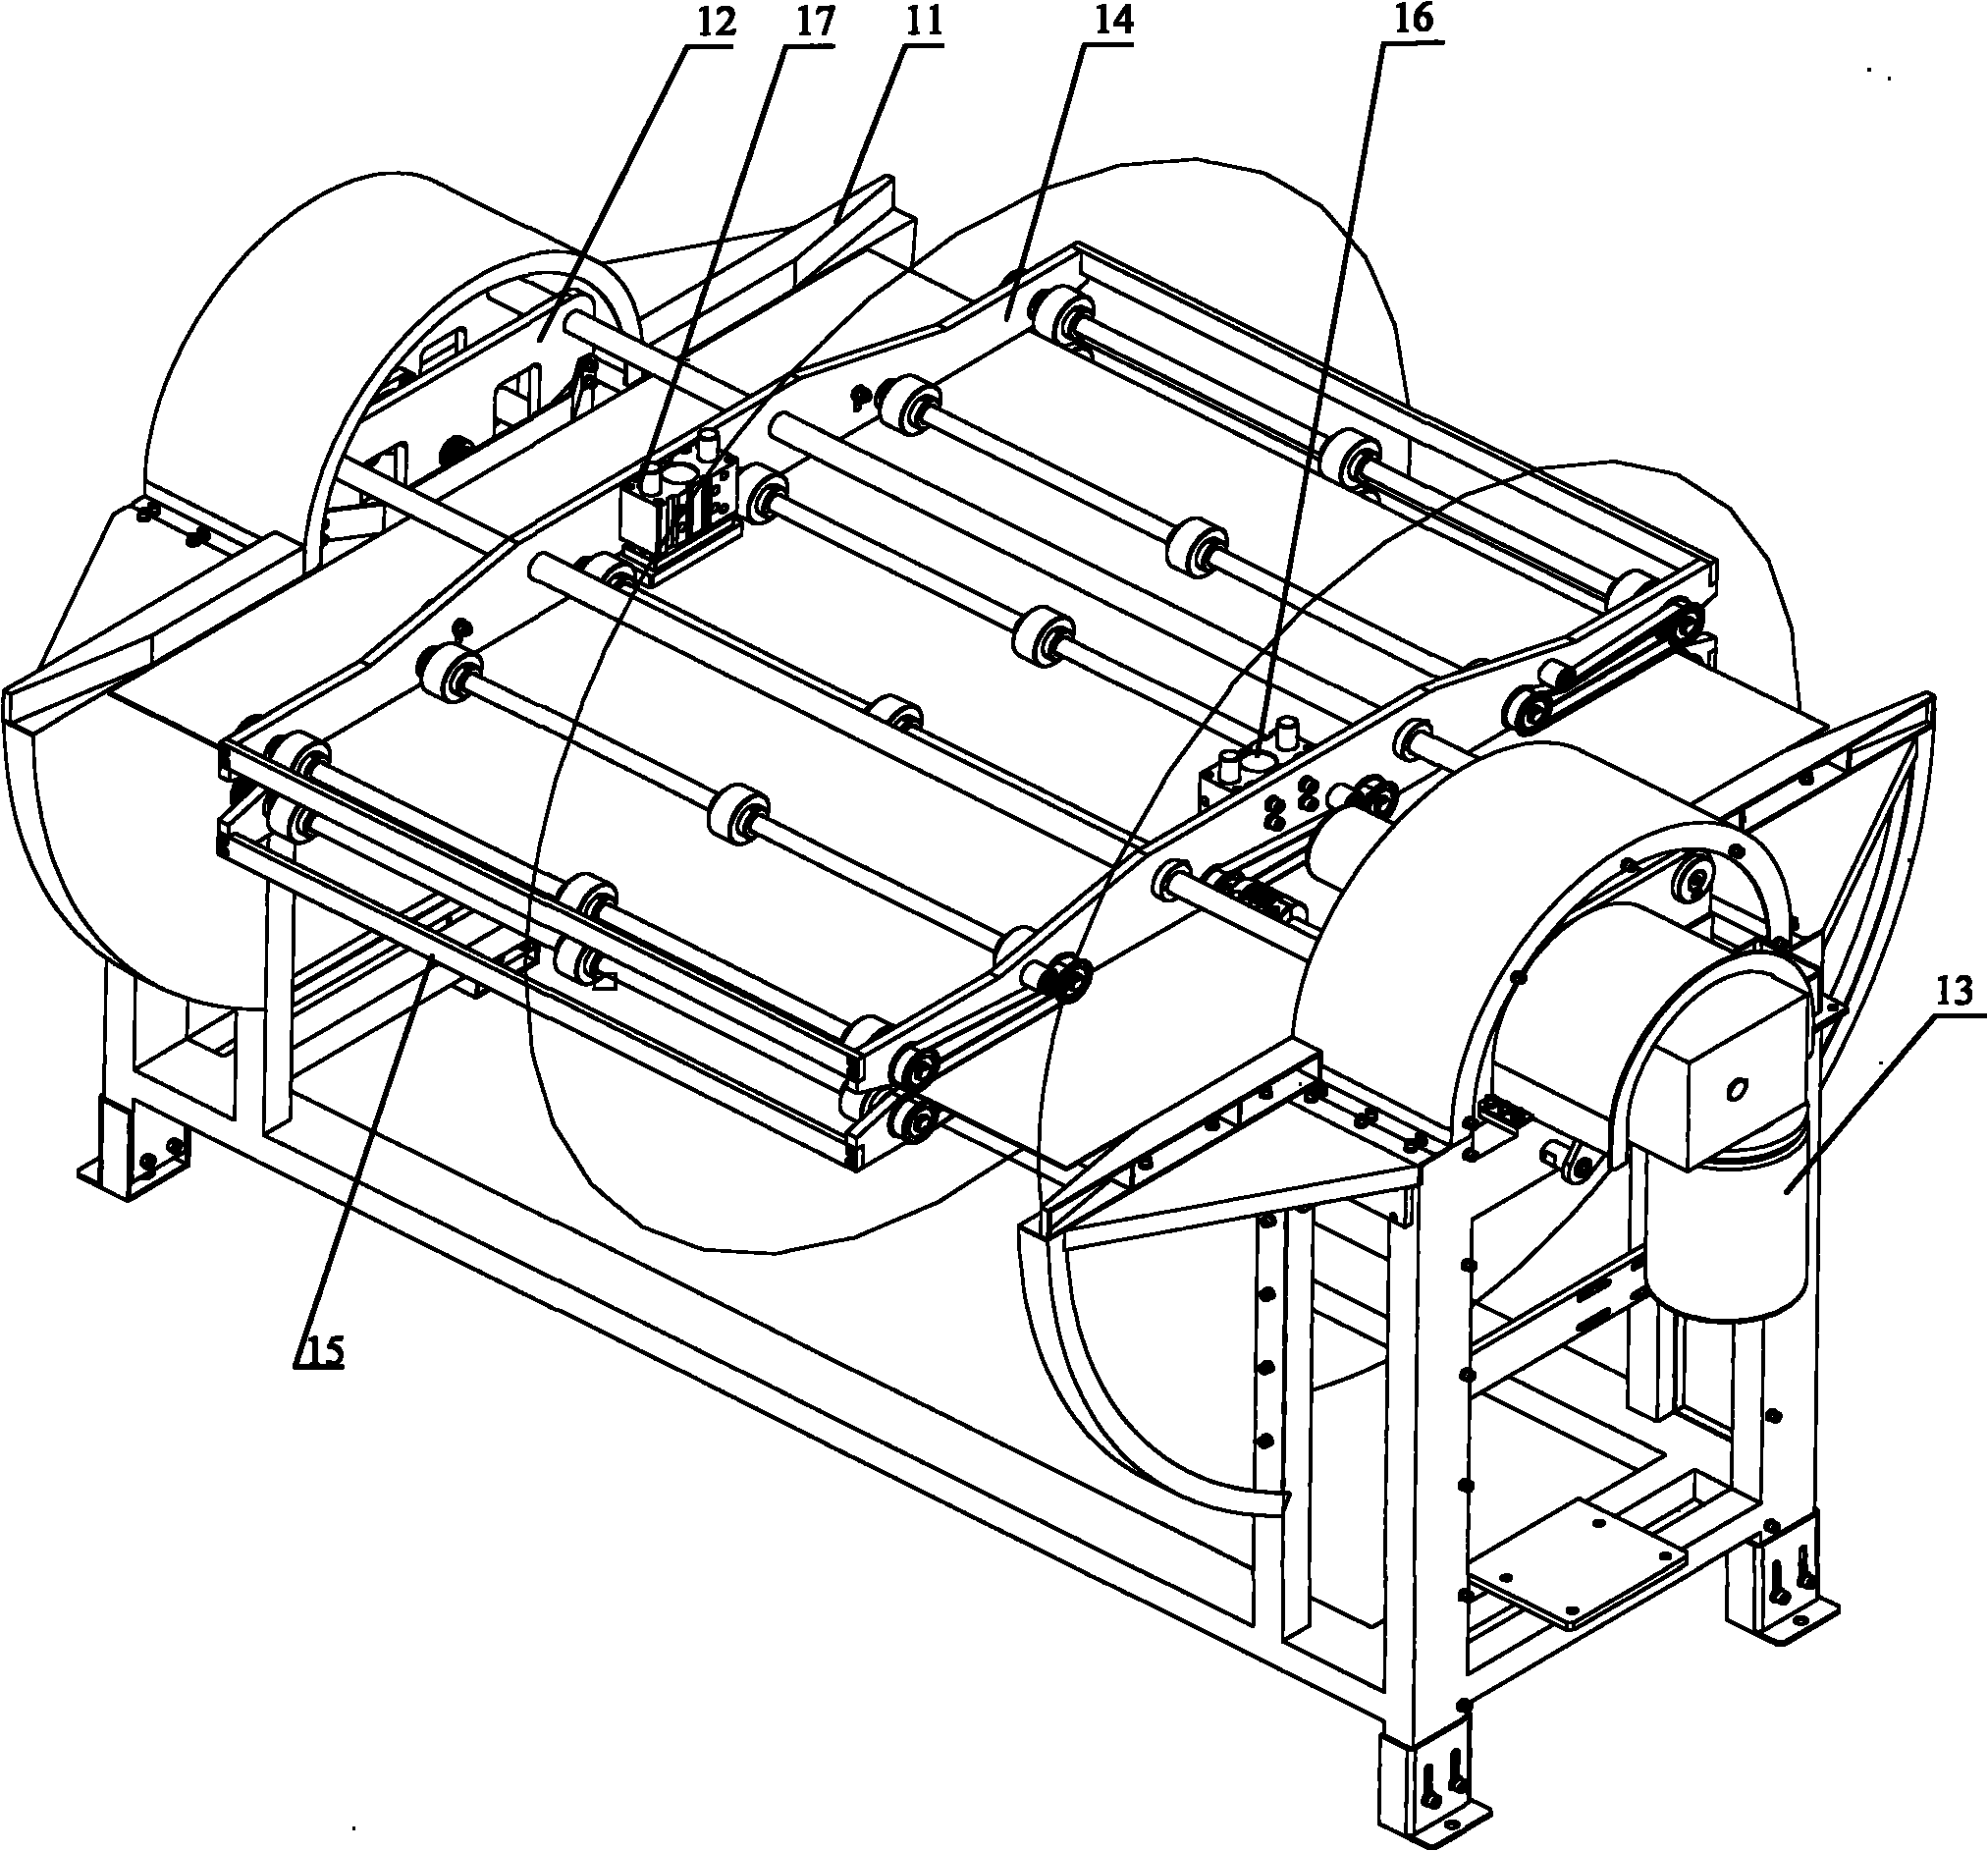 Panel turnover machine